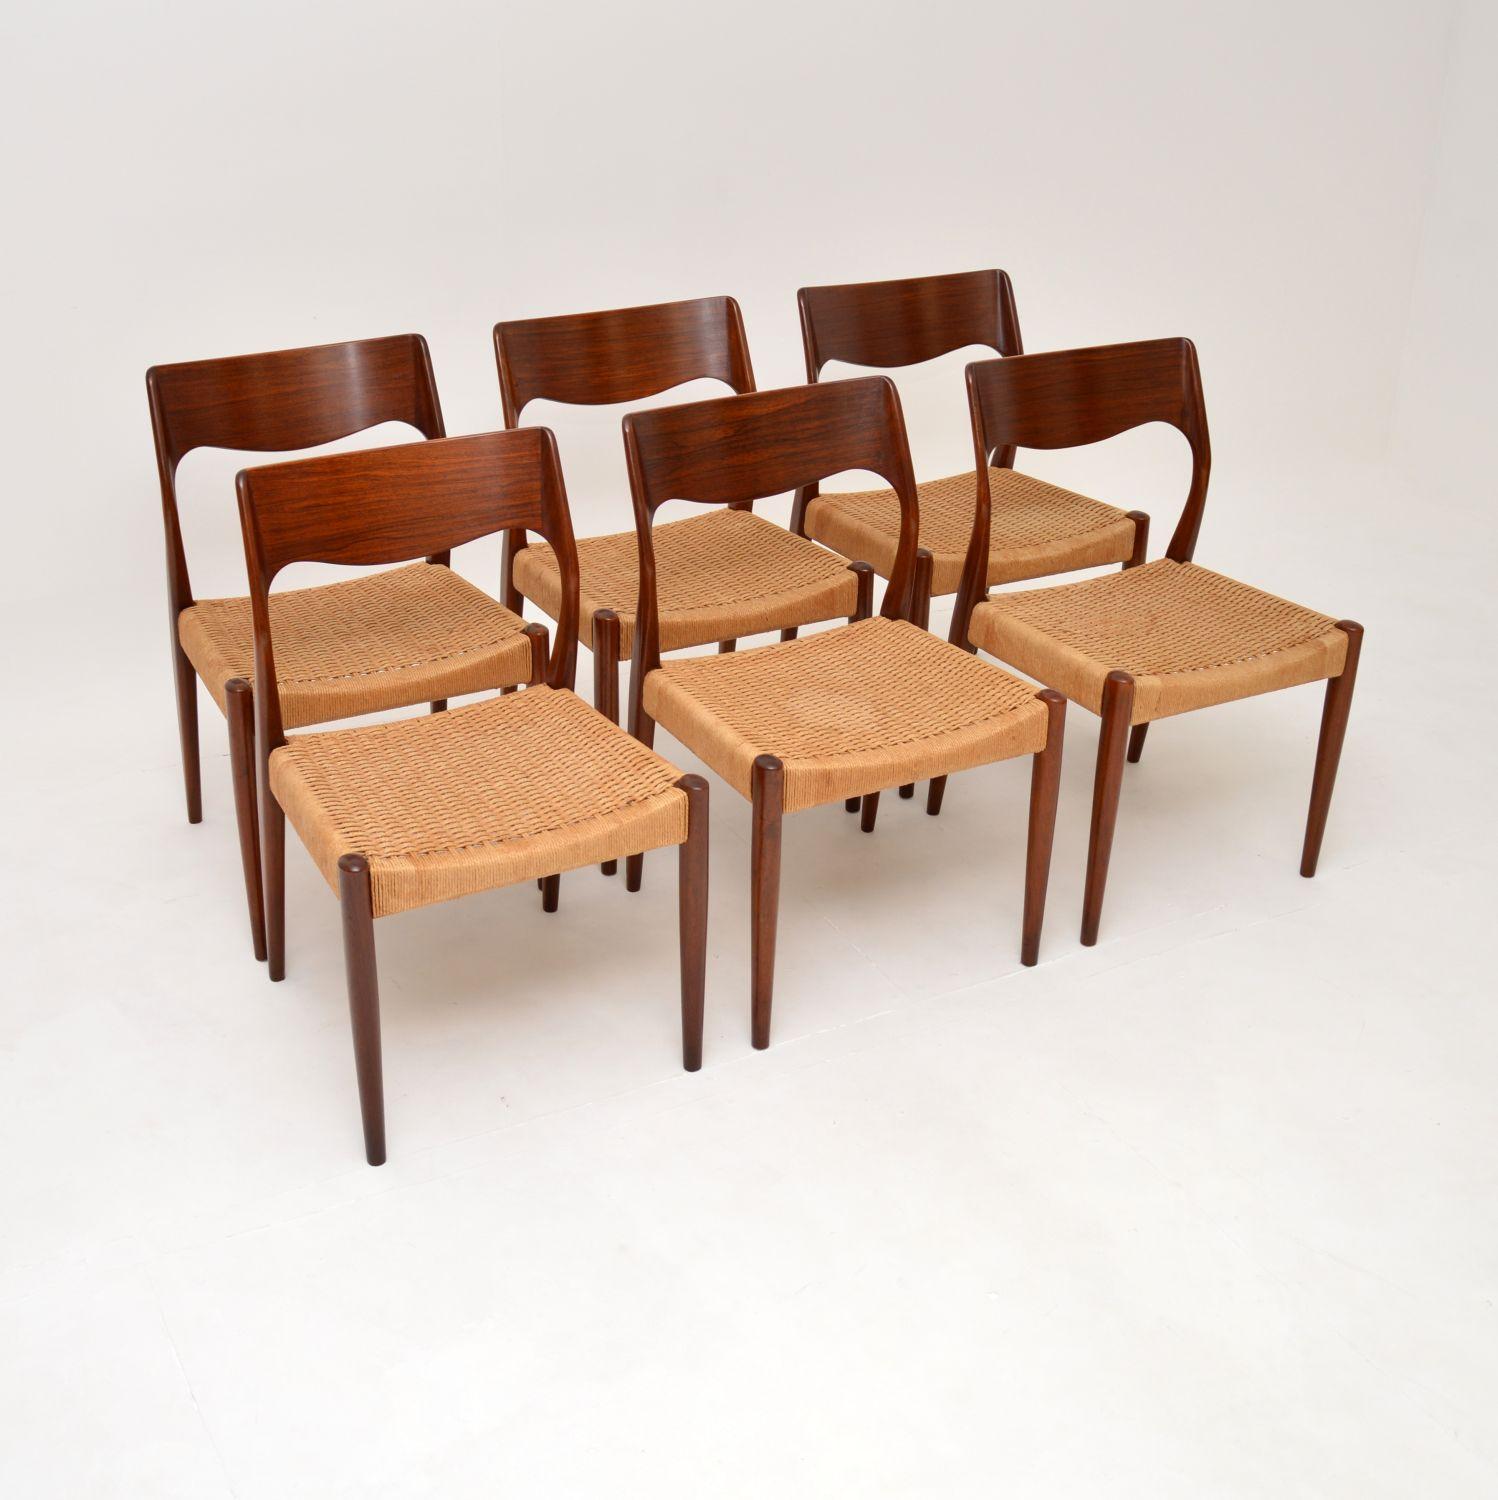 Superbe ensemble de chaises de salle à manger vintage danoises en bois avec des sièges en corde de papier tressé. Attribuées à Arne Hovmand-Olsen, elles ont été récemment importées du Danemark et datent des années 1960.

La qualité est